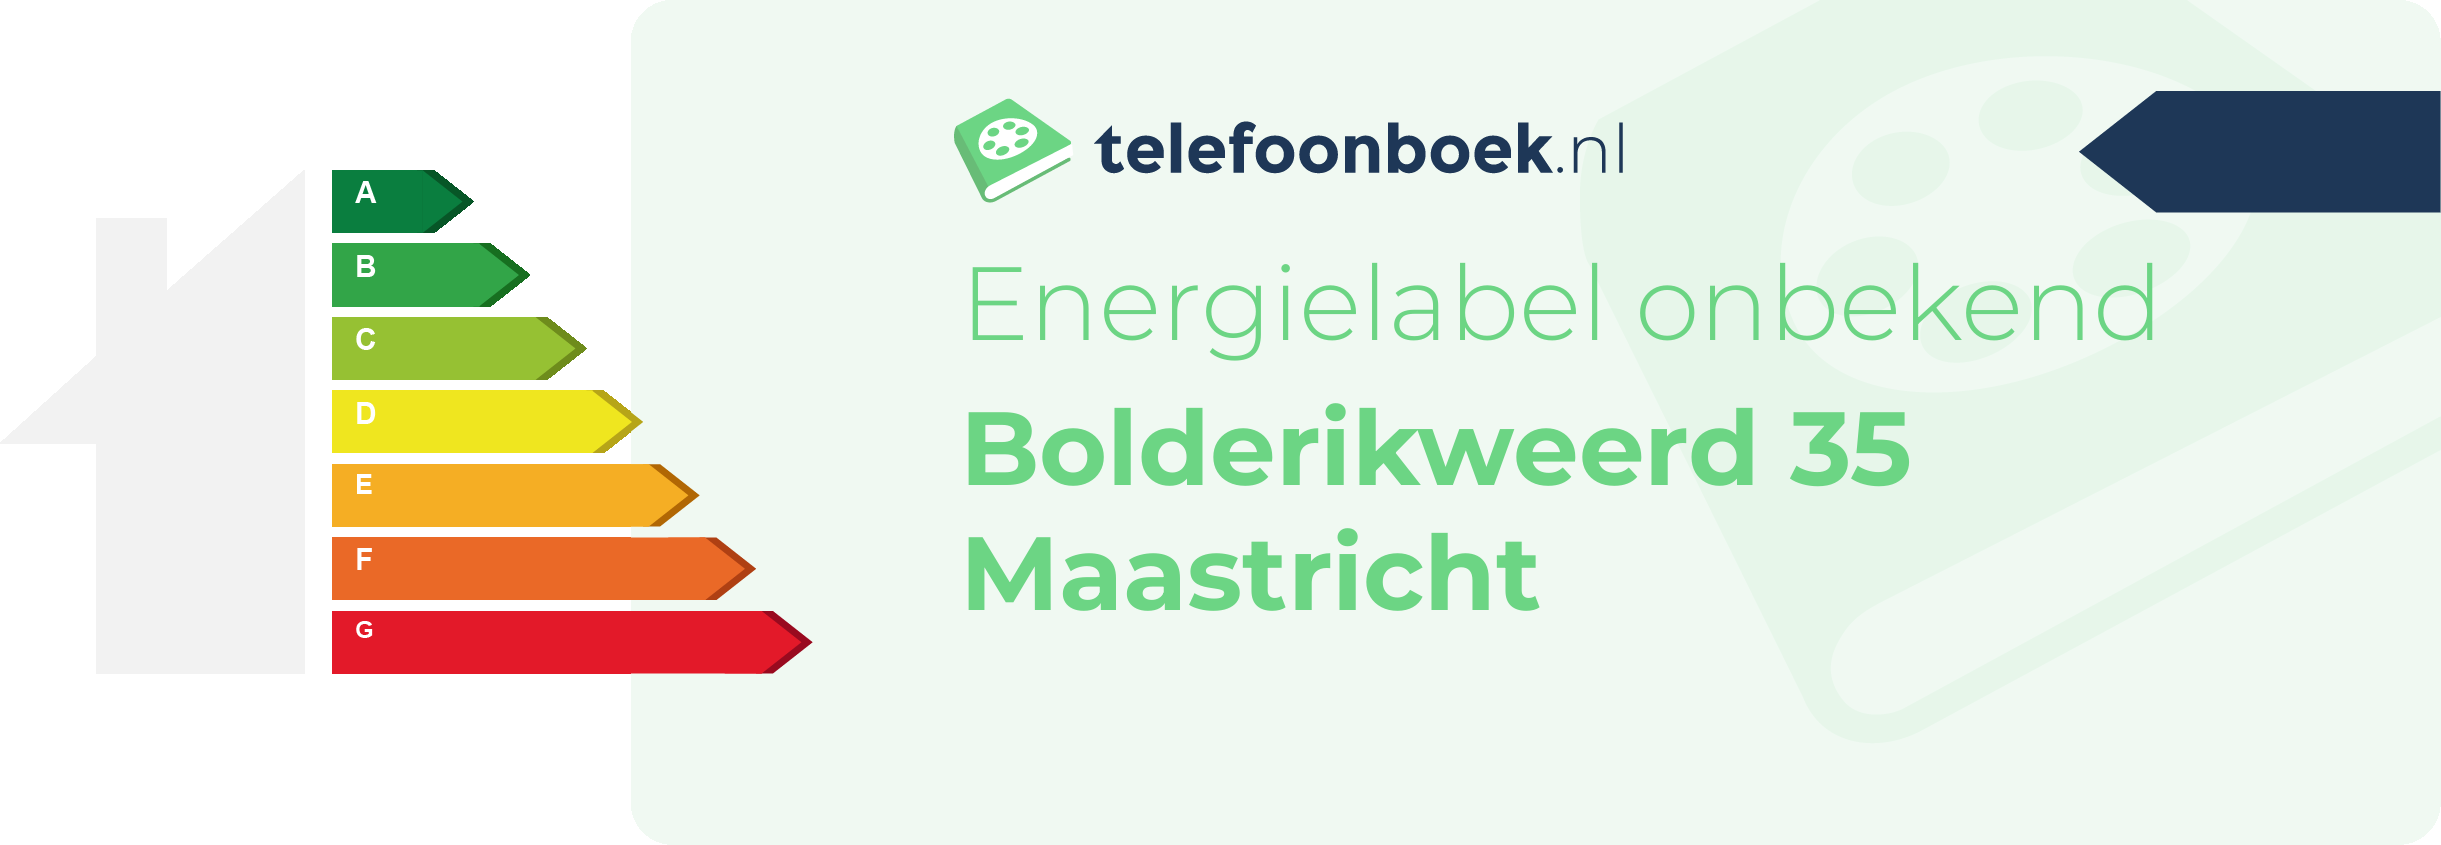 Energielabel Bolderikweerd 35 Maastricht